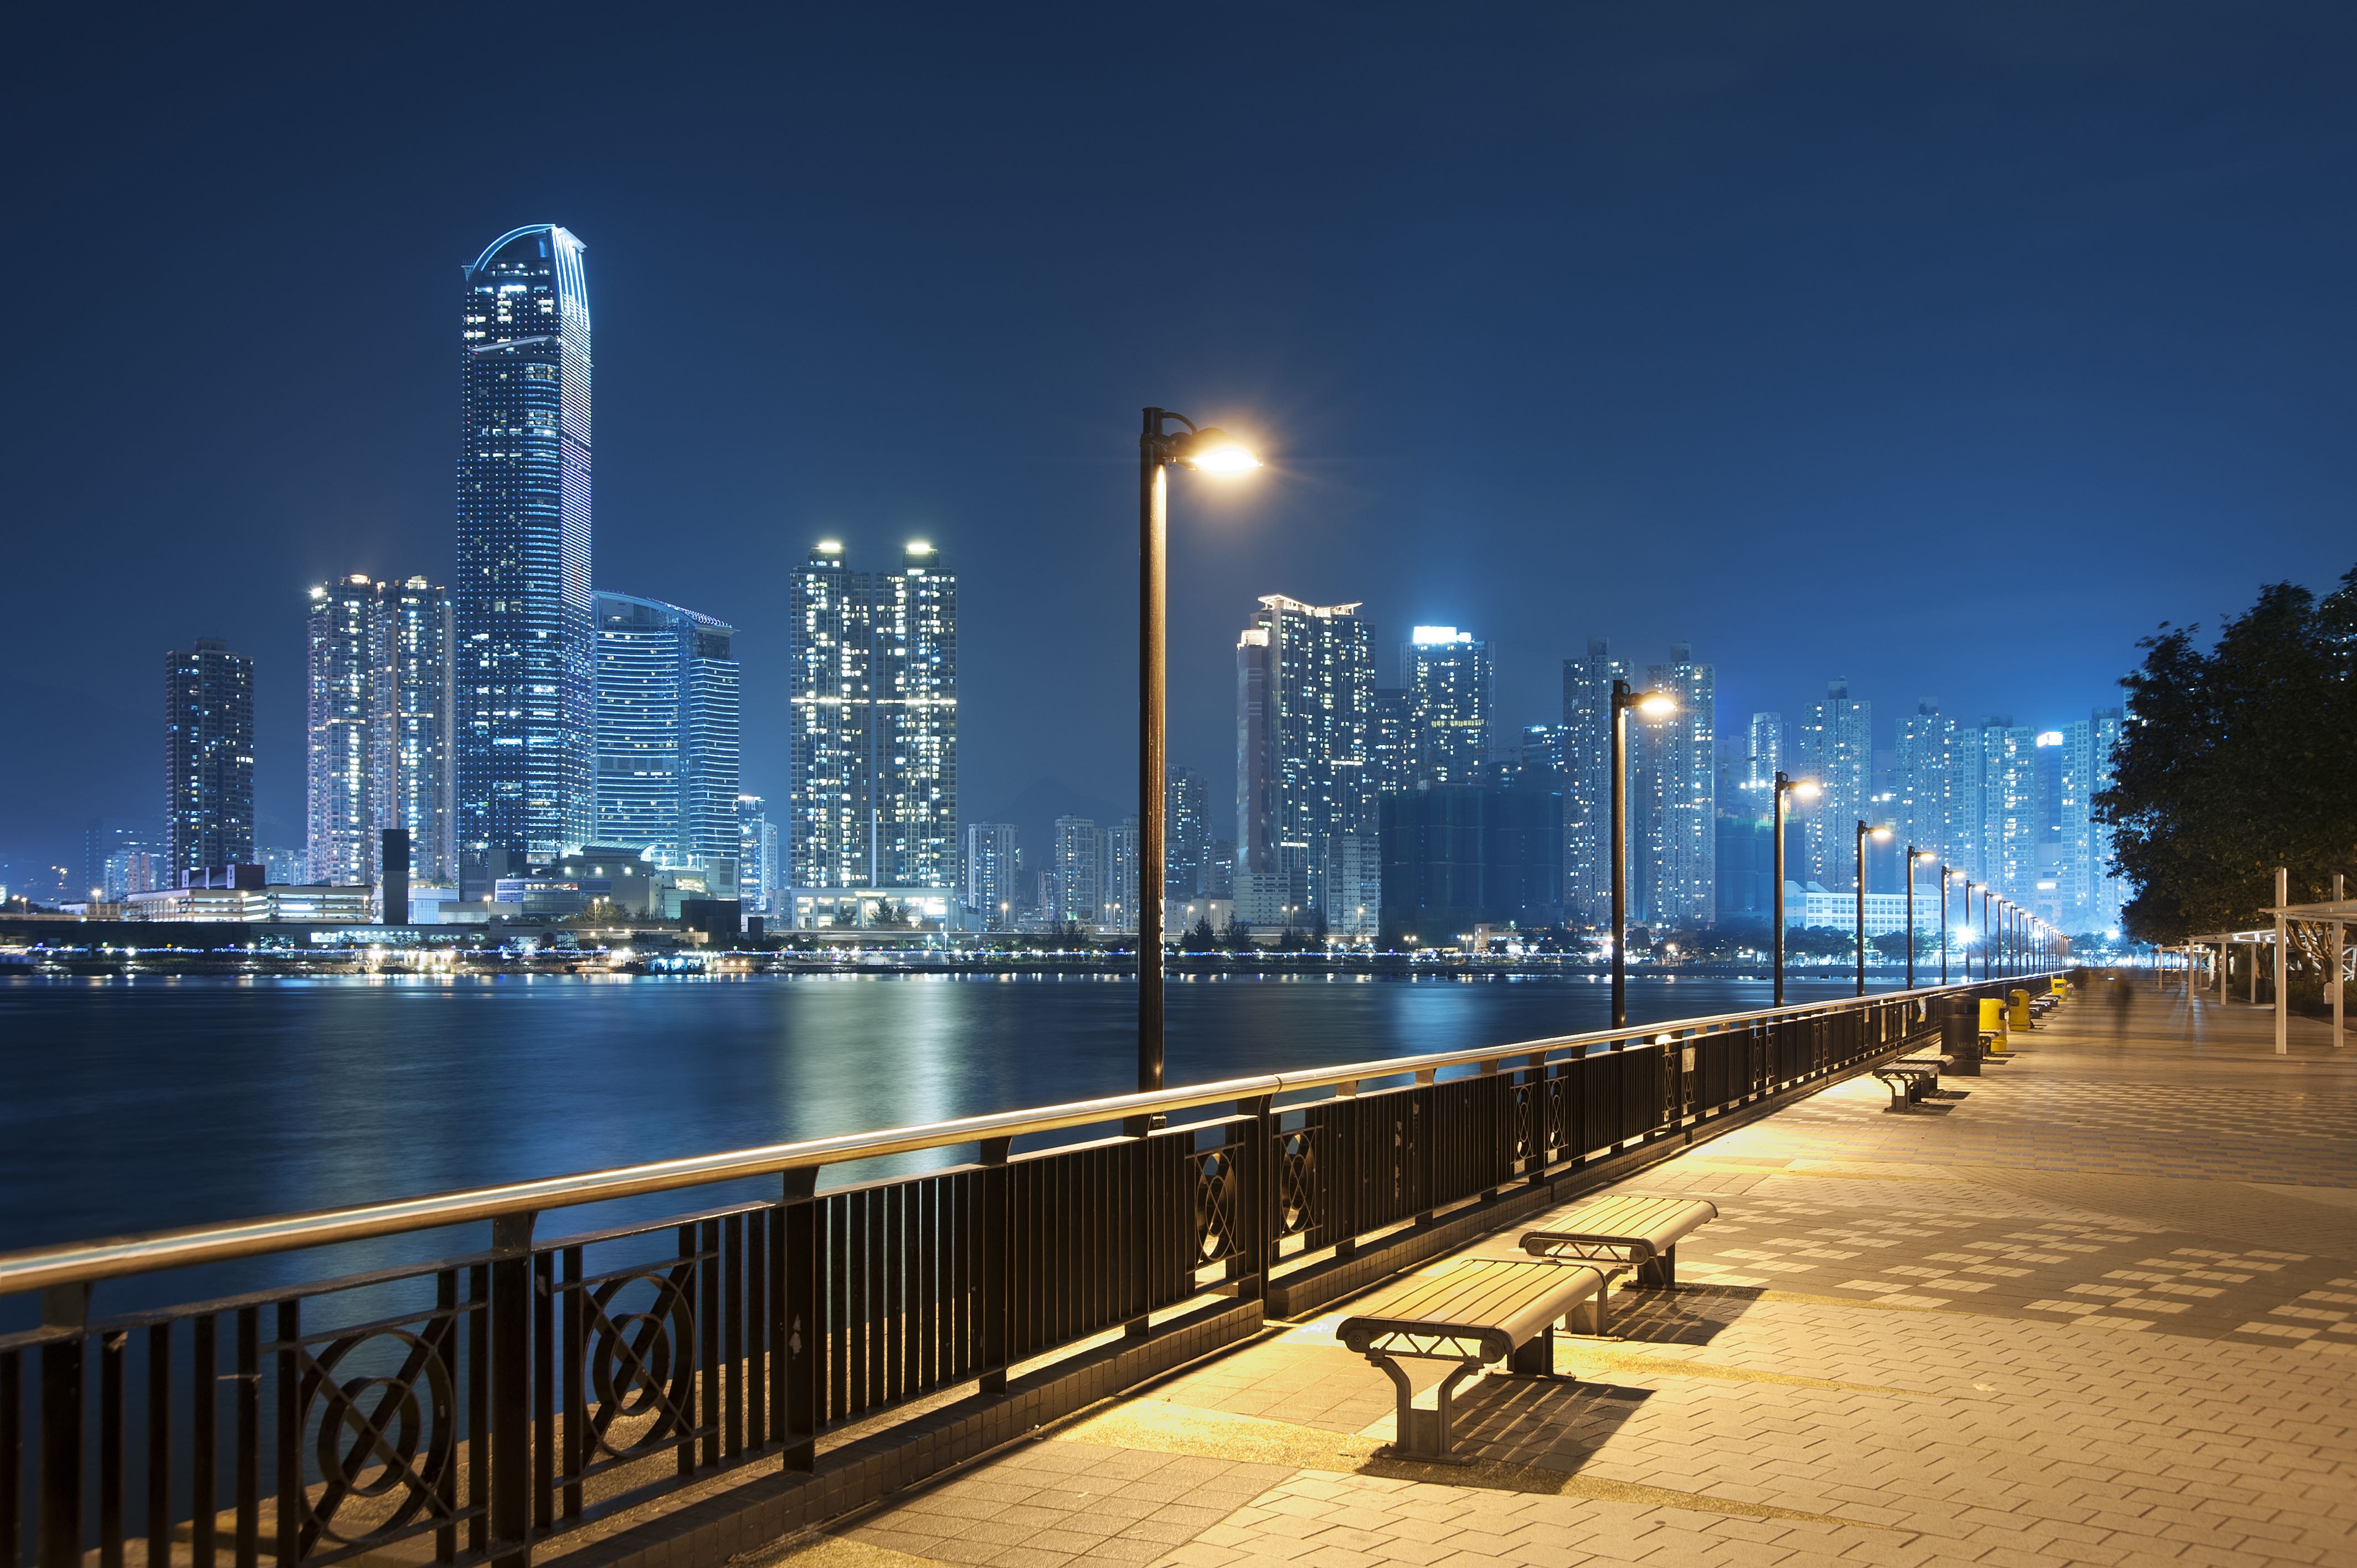 Alumbrado público LED: ahorro y eficiencia para ciudades inteligentes